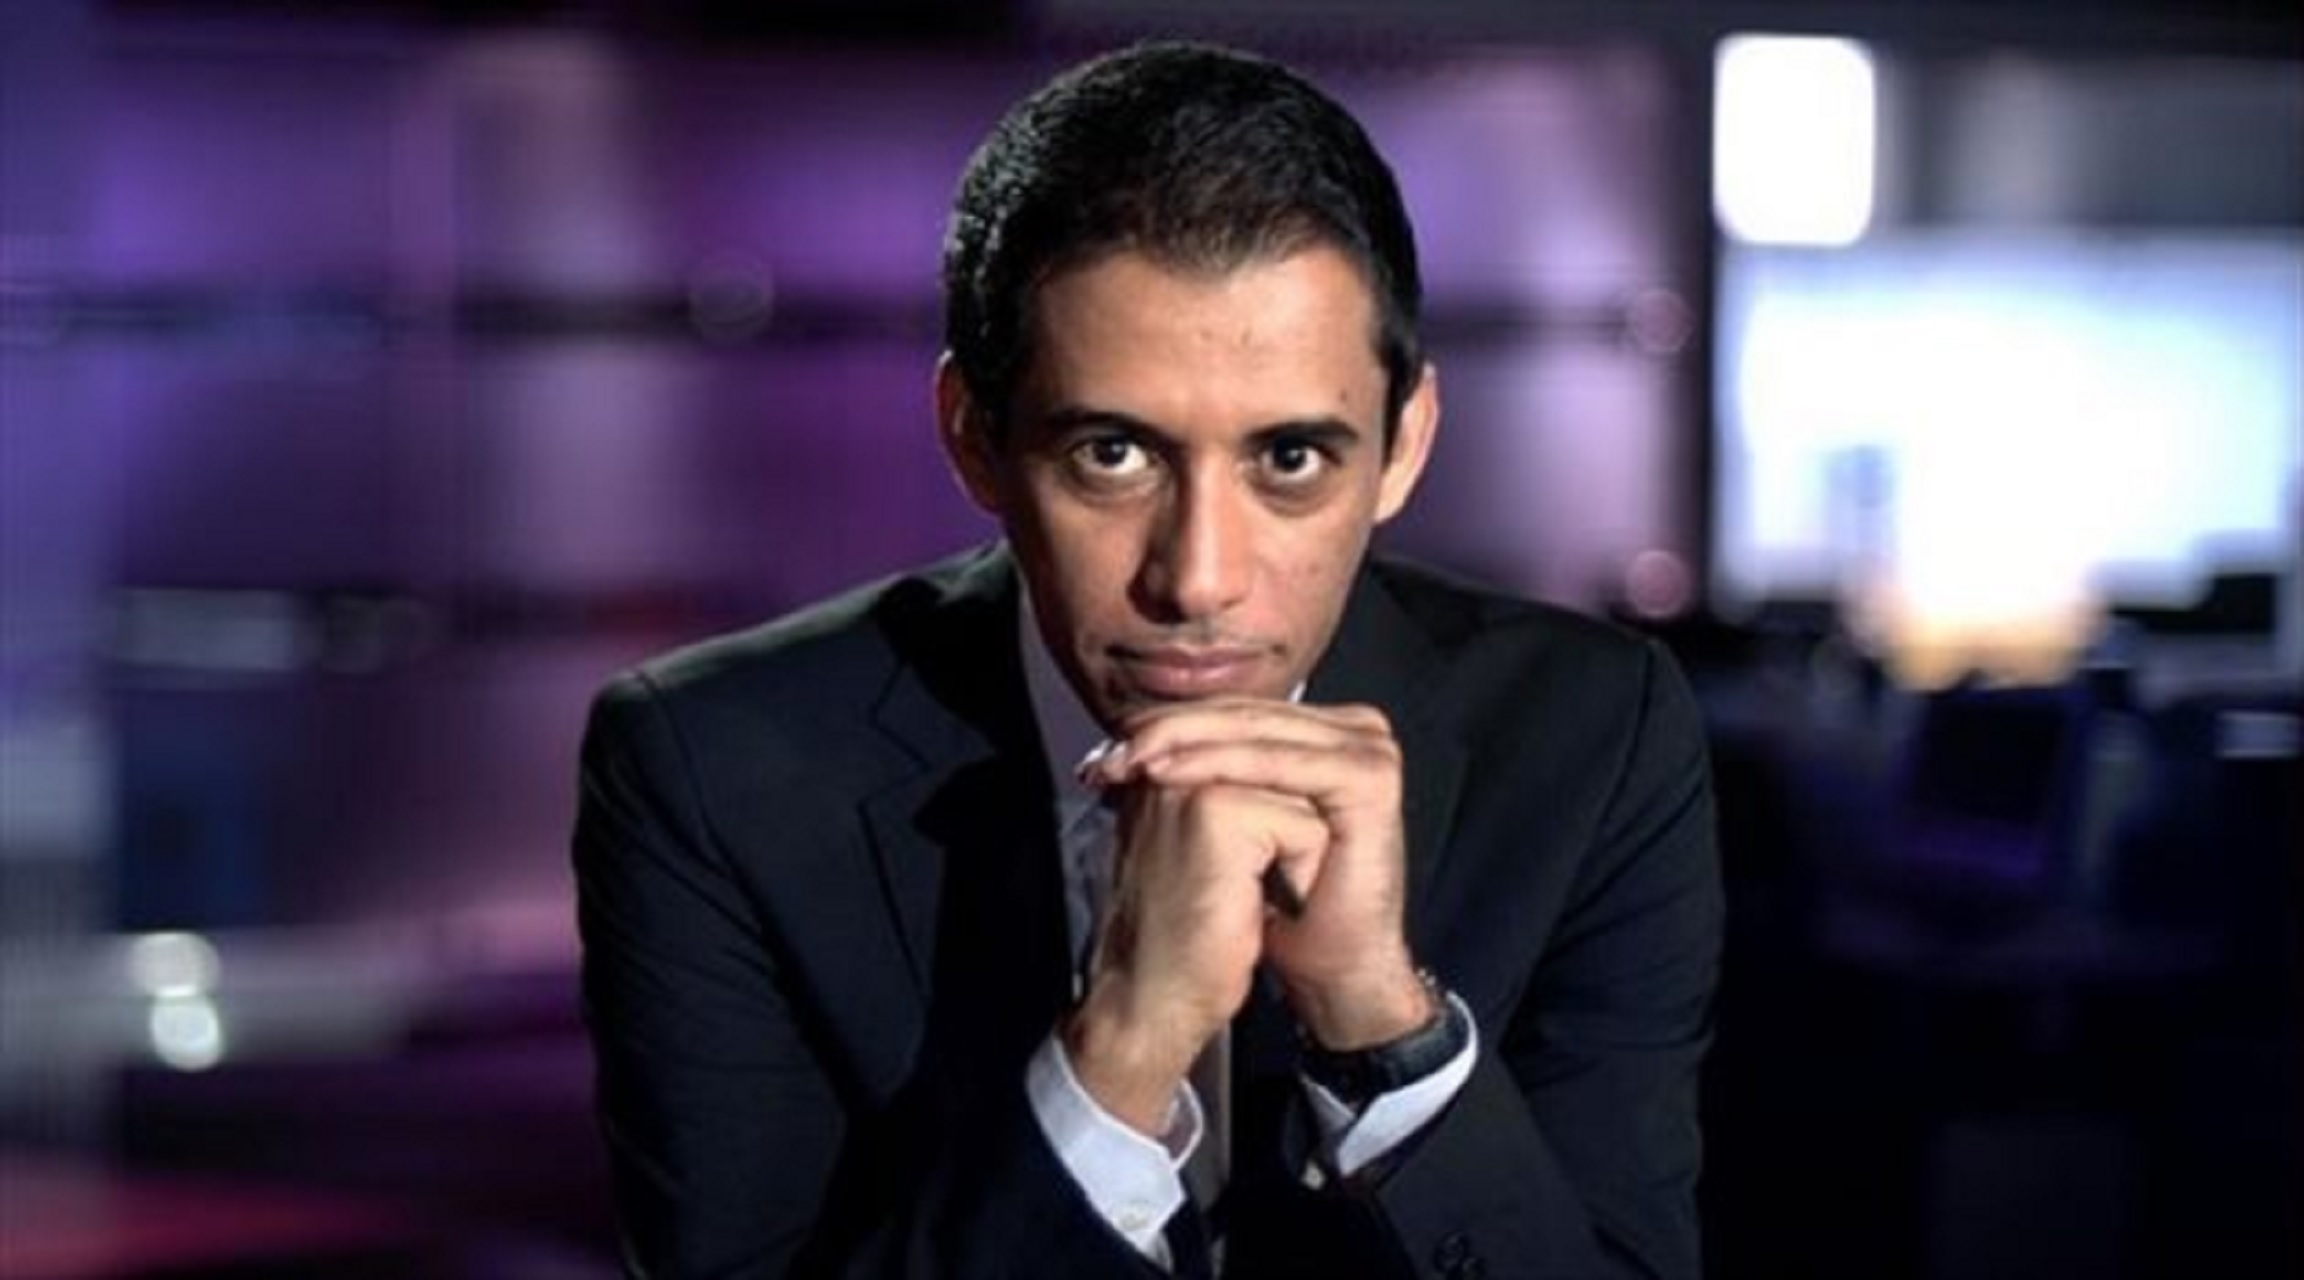 صحيفة الجزيرة تعتذر لبتال القوس بسبب تغريدة